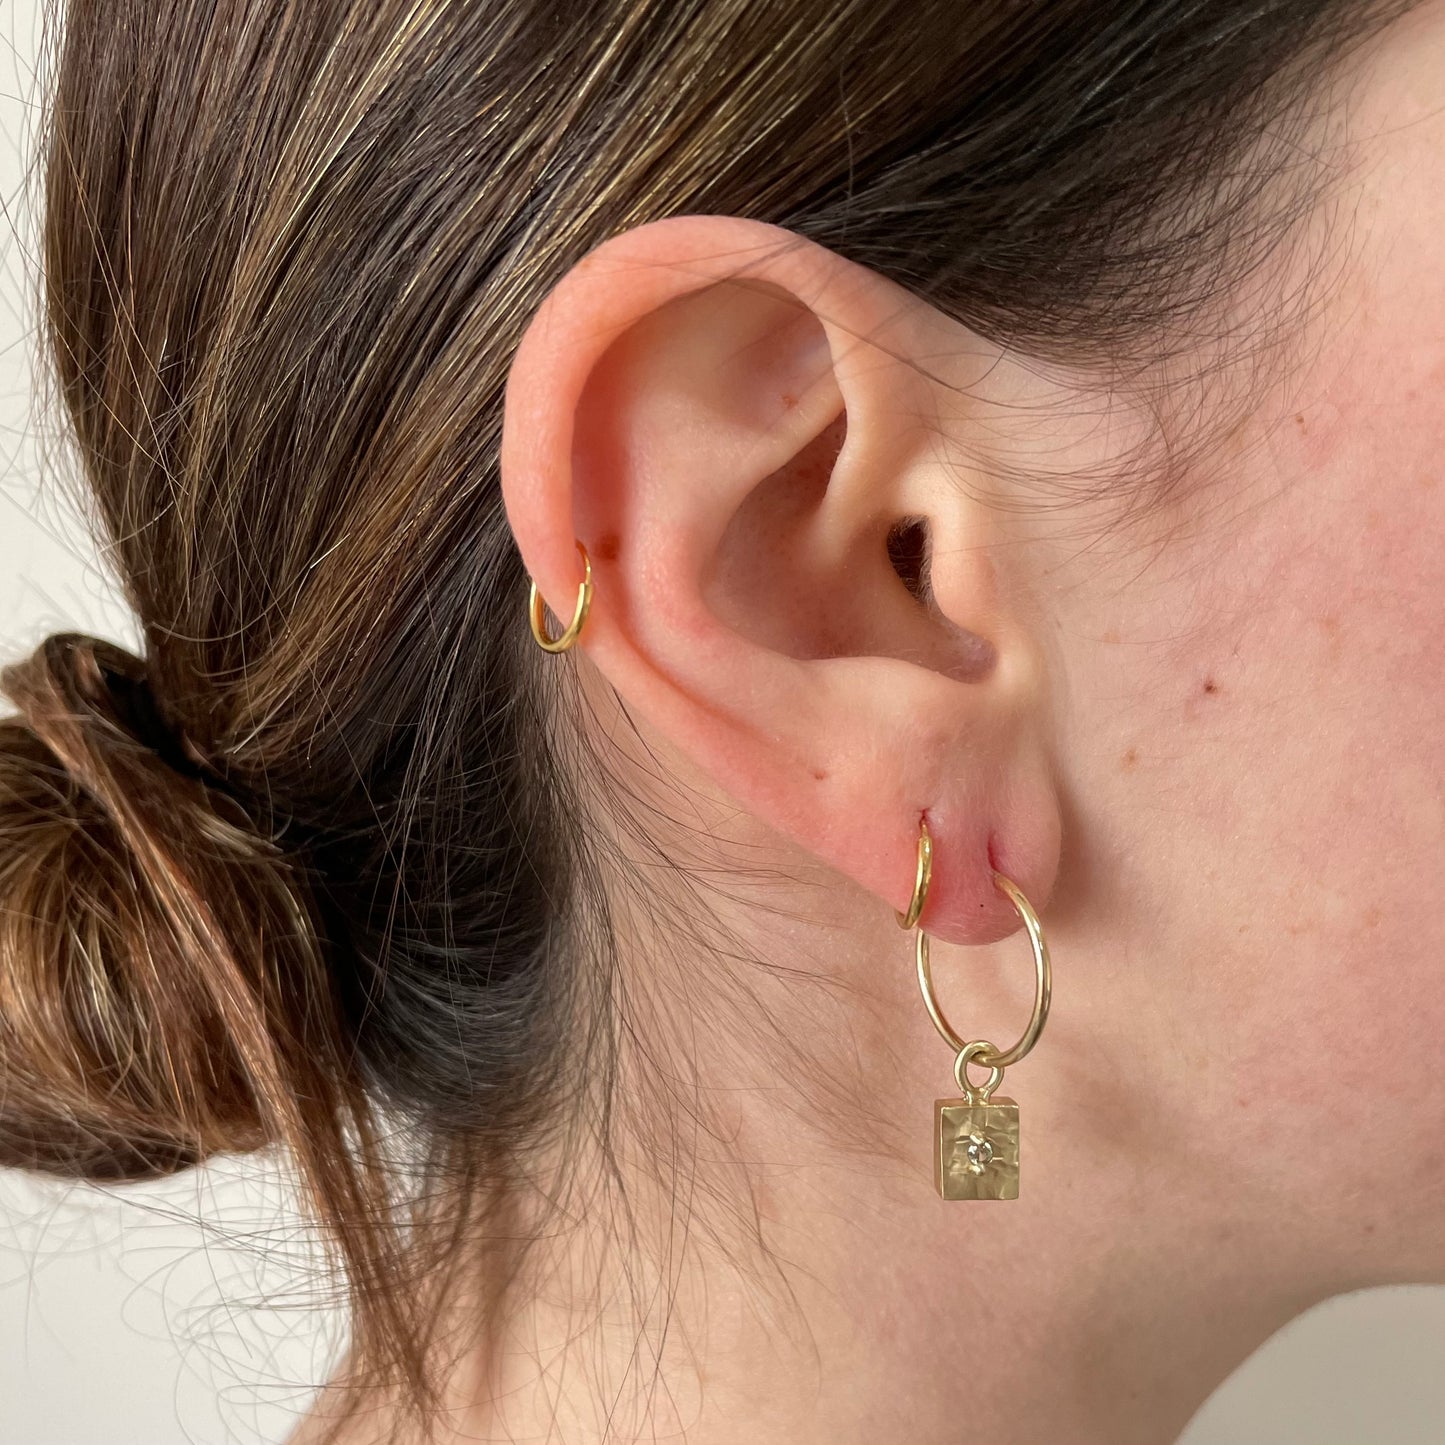 The Alchemy Earrings